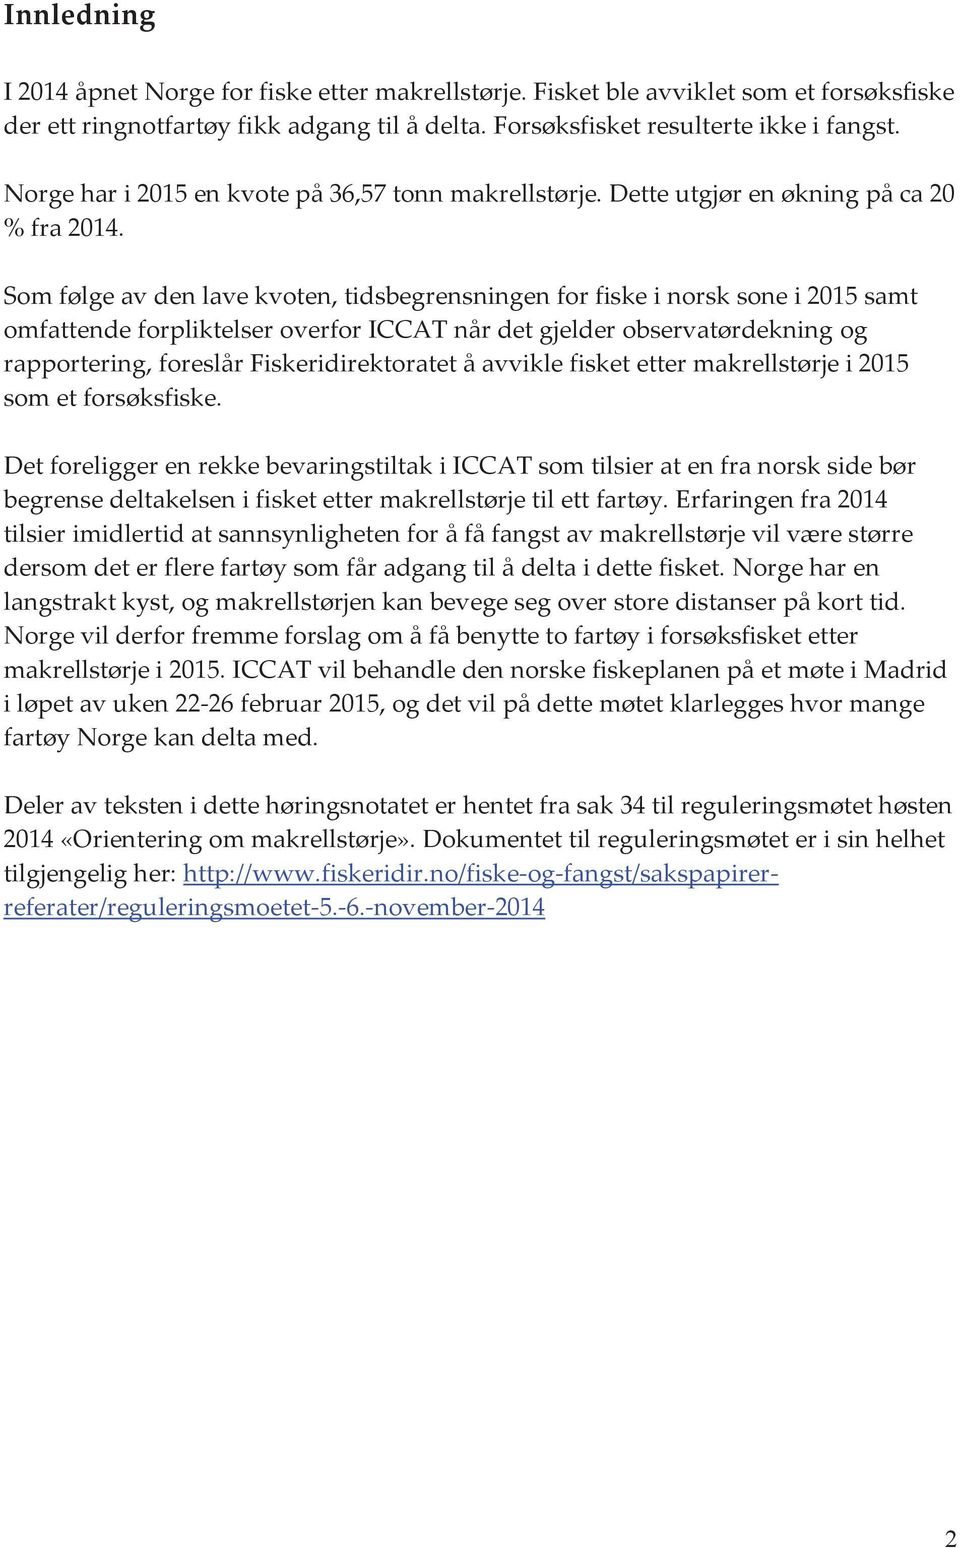 Som følge av den lave kvoten, tidsbegrensningen for fiske i norsk sone i 2015 samt omfattende forpliktelser overfor ICCAT når det gjelder observatørdekning og rapportering, foreslår